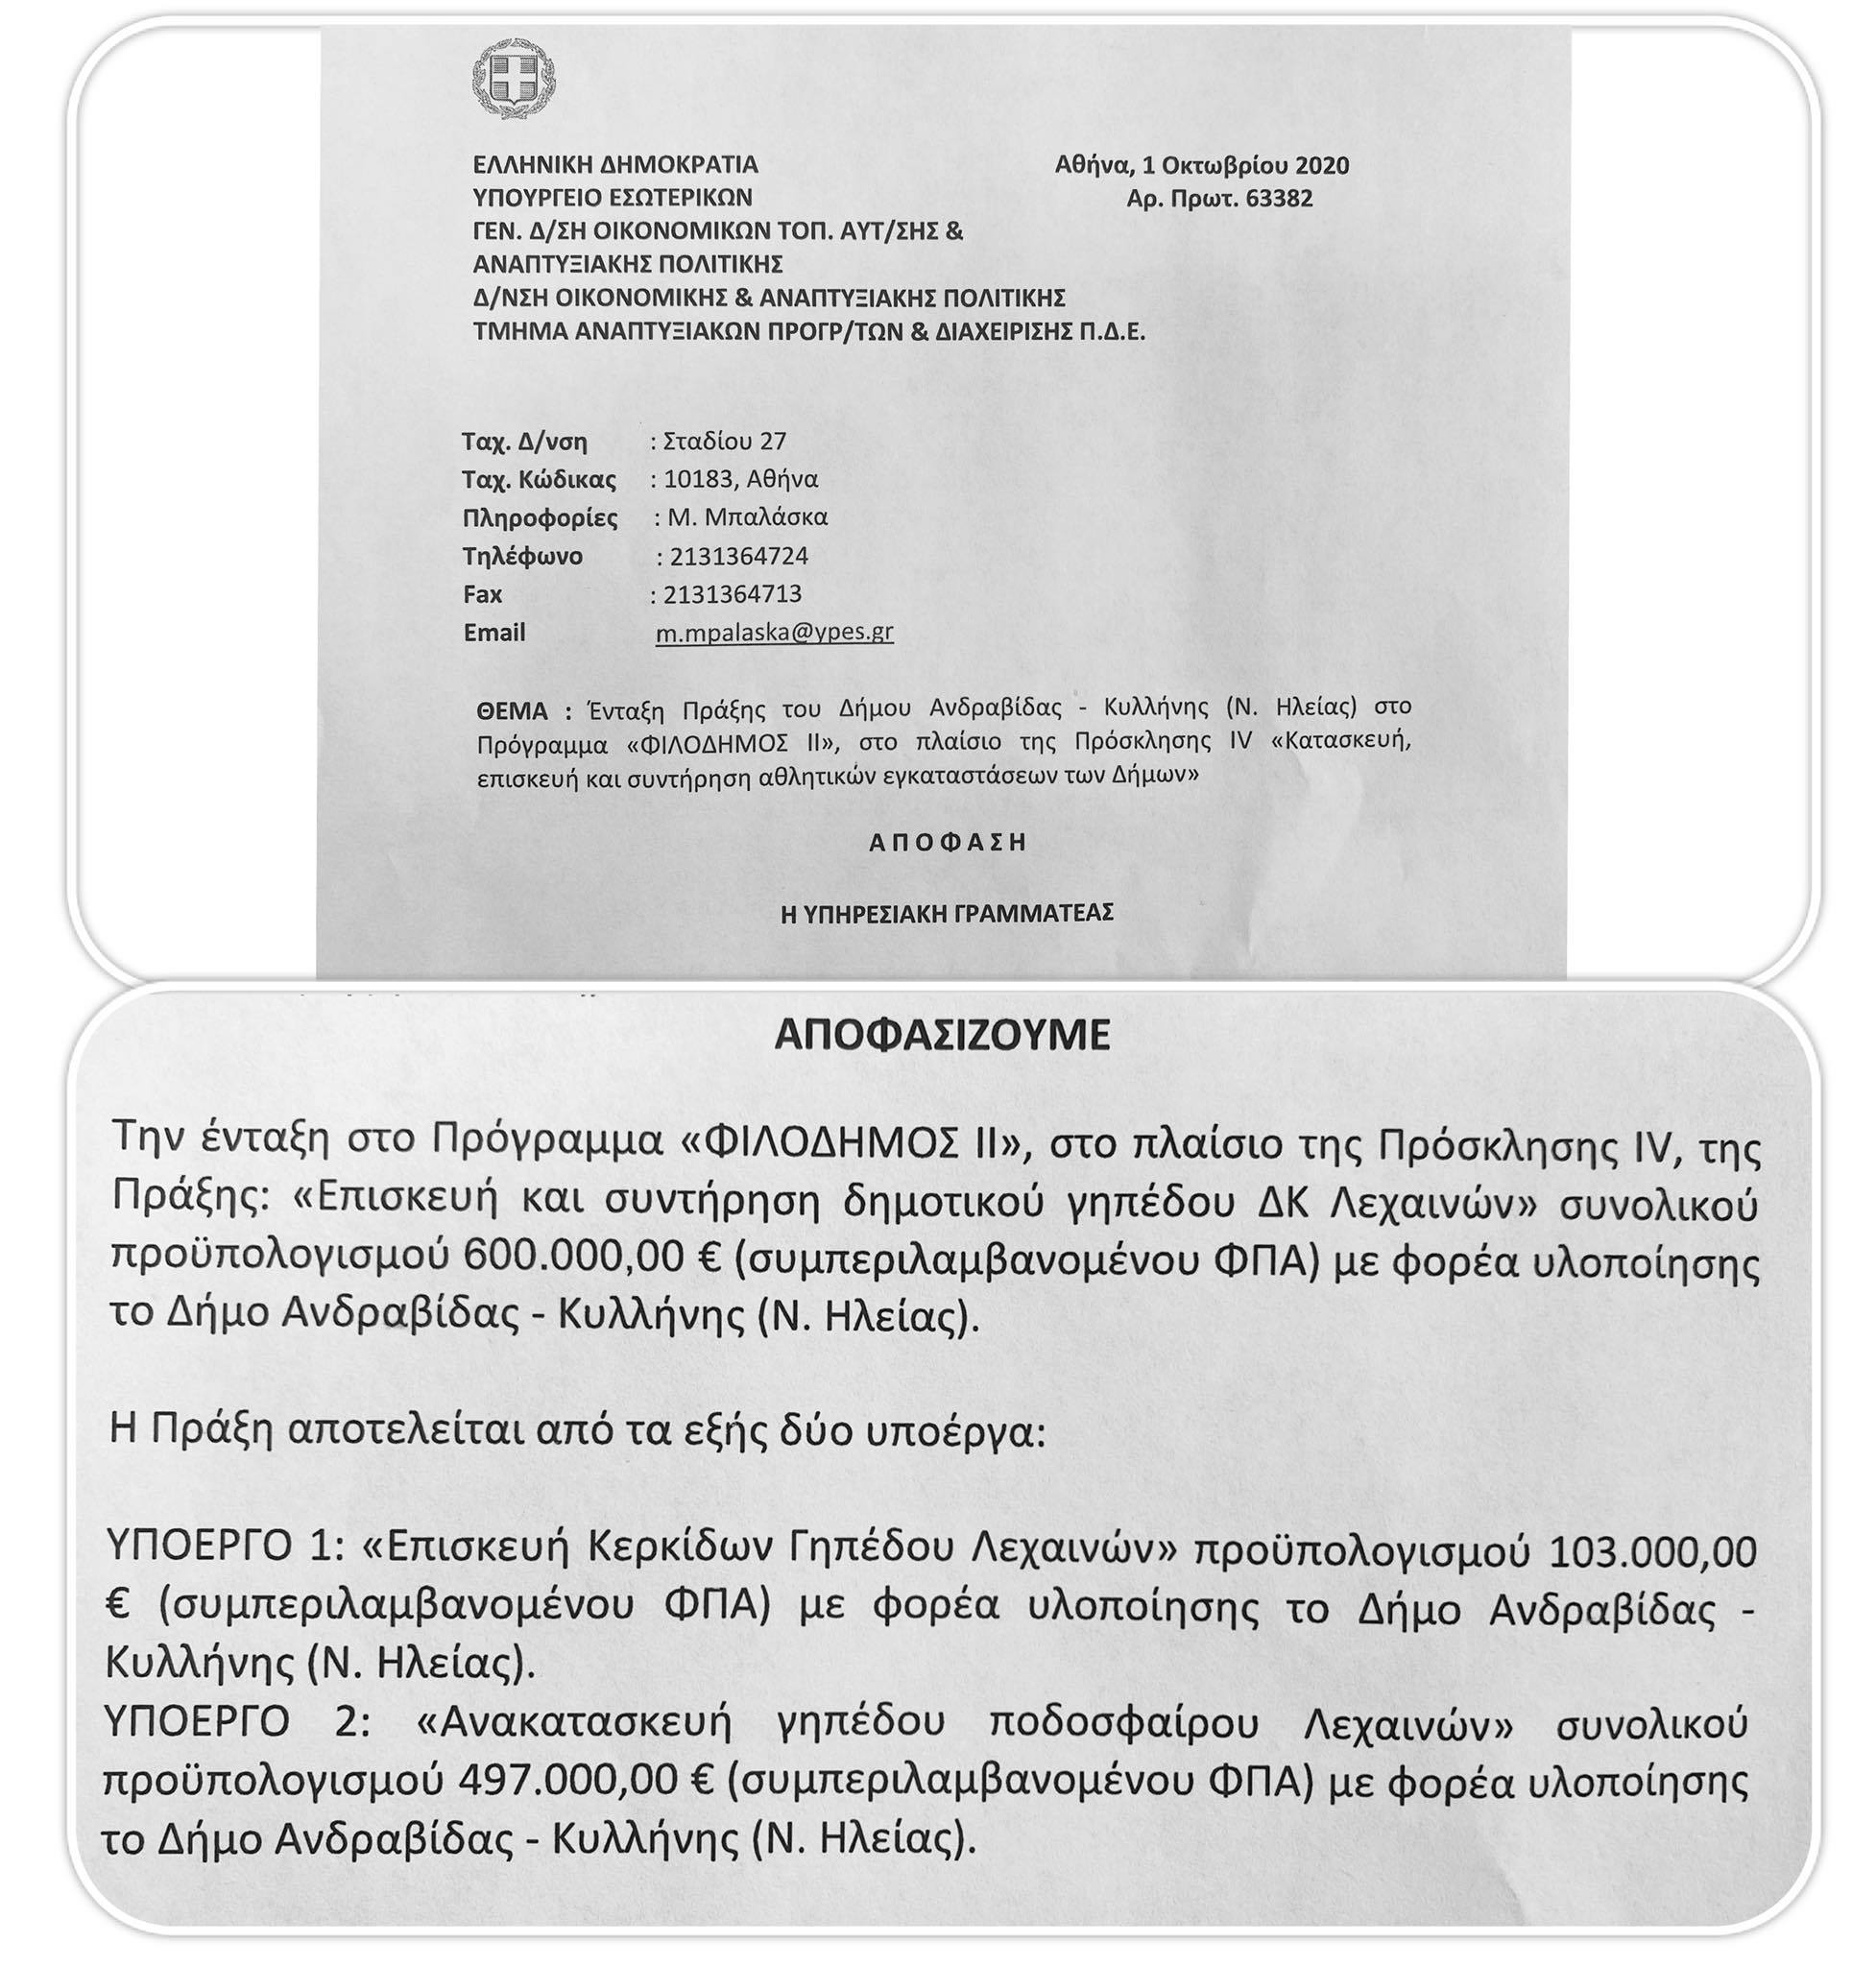 Δήμος Ανδραβίδας-Κυλλήνης: Ένταξη Πράξης στο Πρόγραμμα «ΦΙΛΟΔΗΜΟΣ ΙΙ» για κατασκευή, επισκευή και συντήρηση αθλητικών εγκαταστάσεων